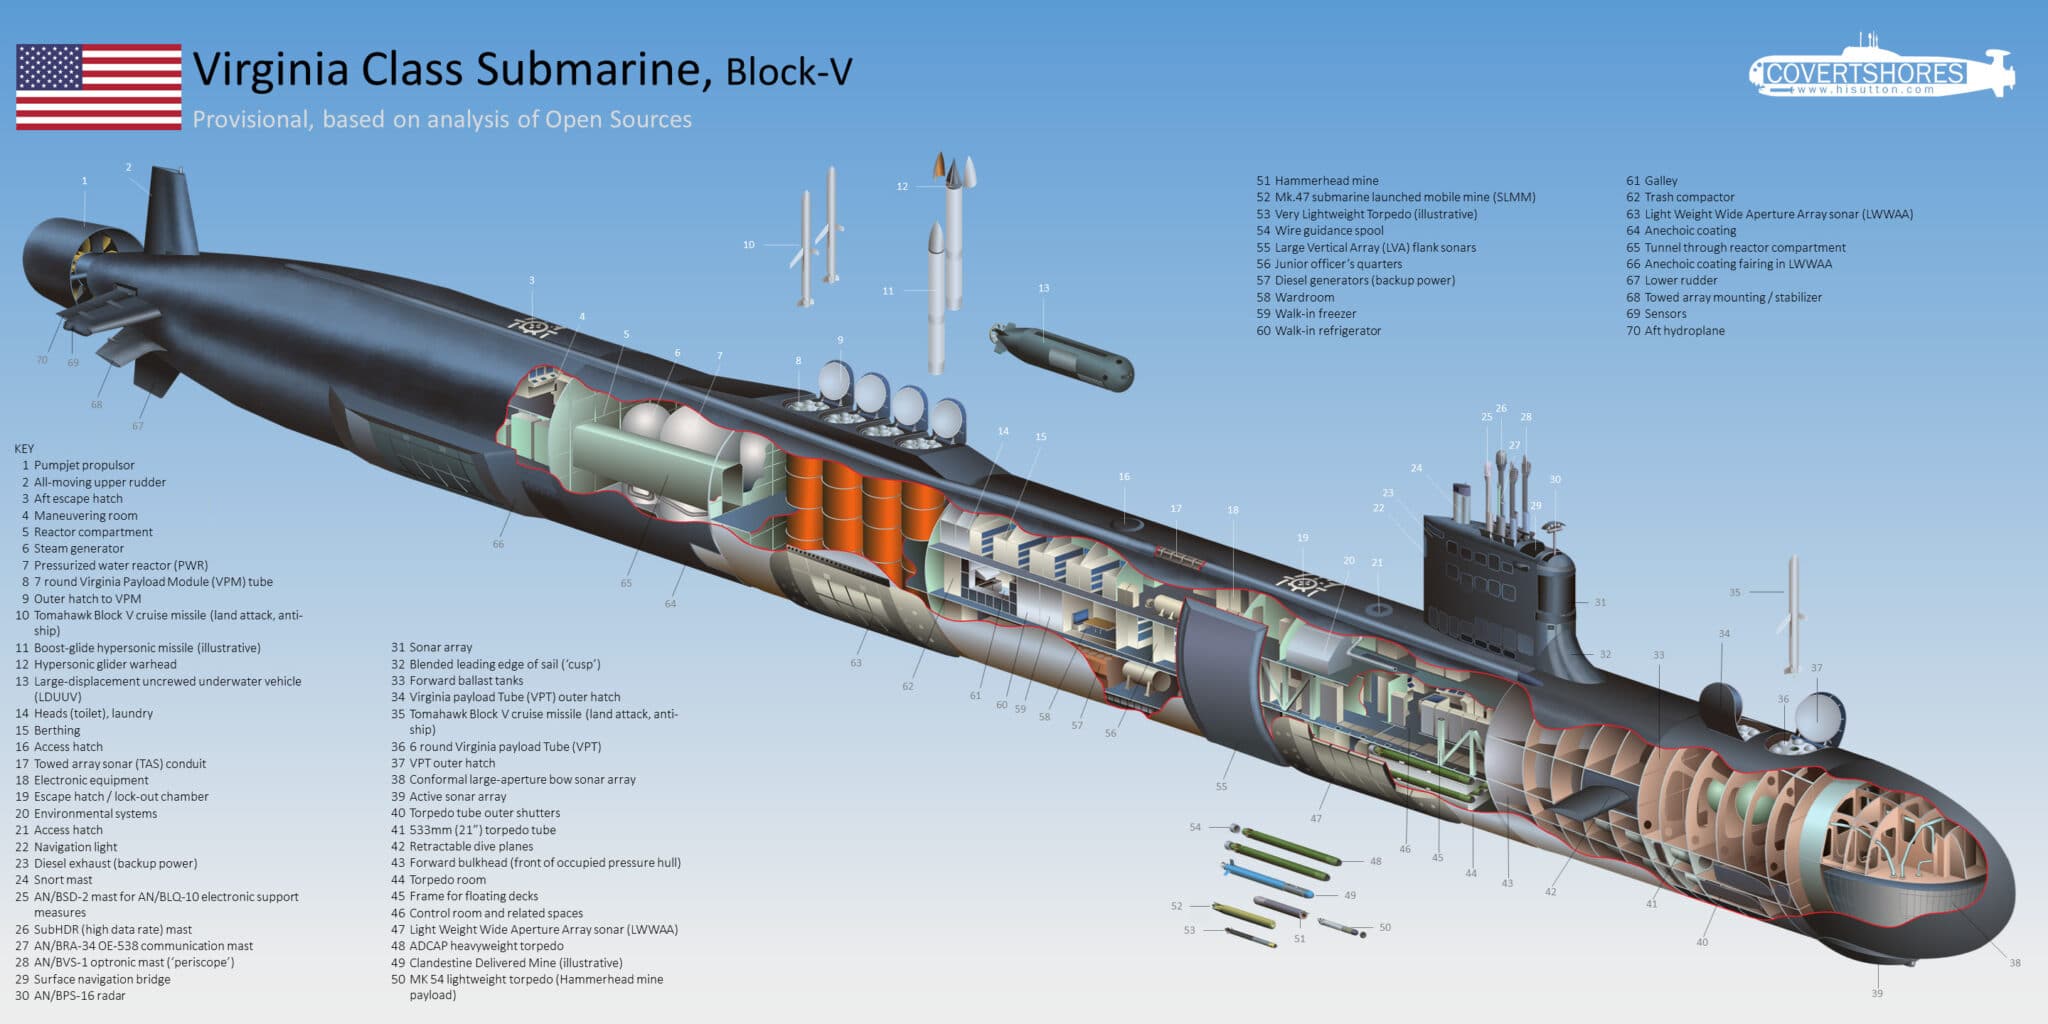 ایالات متحده و روسیه دو قدرت برتر جهان در زمینه تولید زیردریایی های نظامی هستند. اما سوال این است زیردریایی های دو کشور چه توانی دارند؟